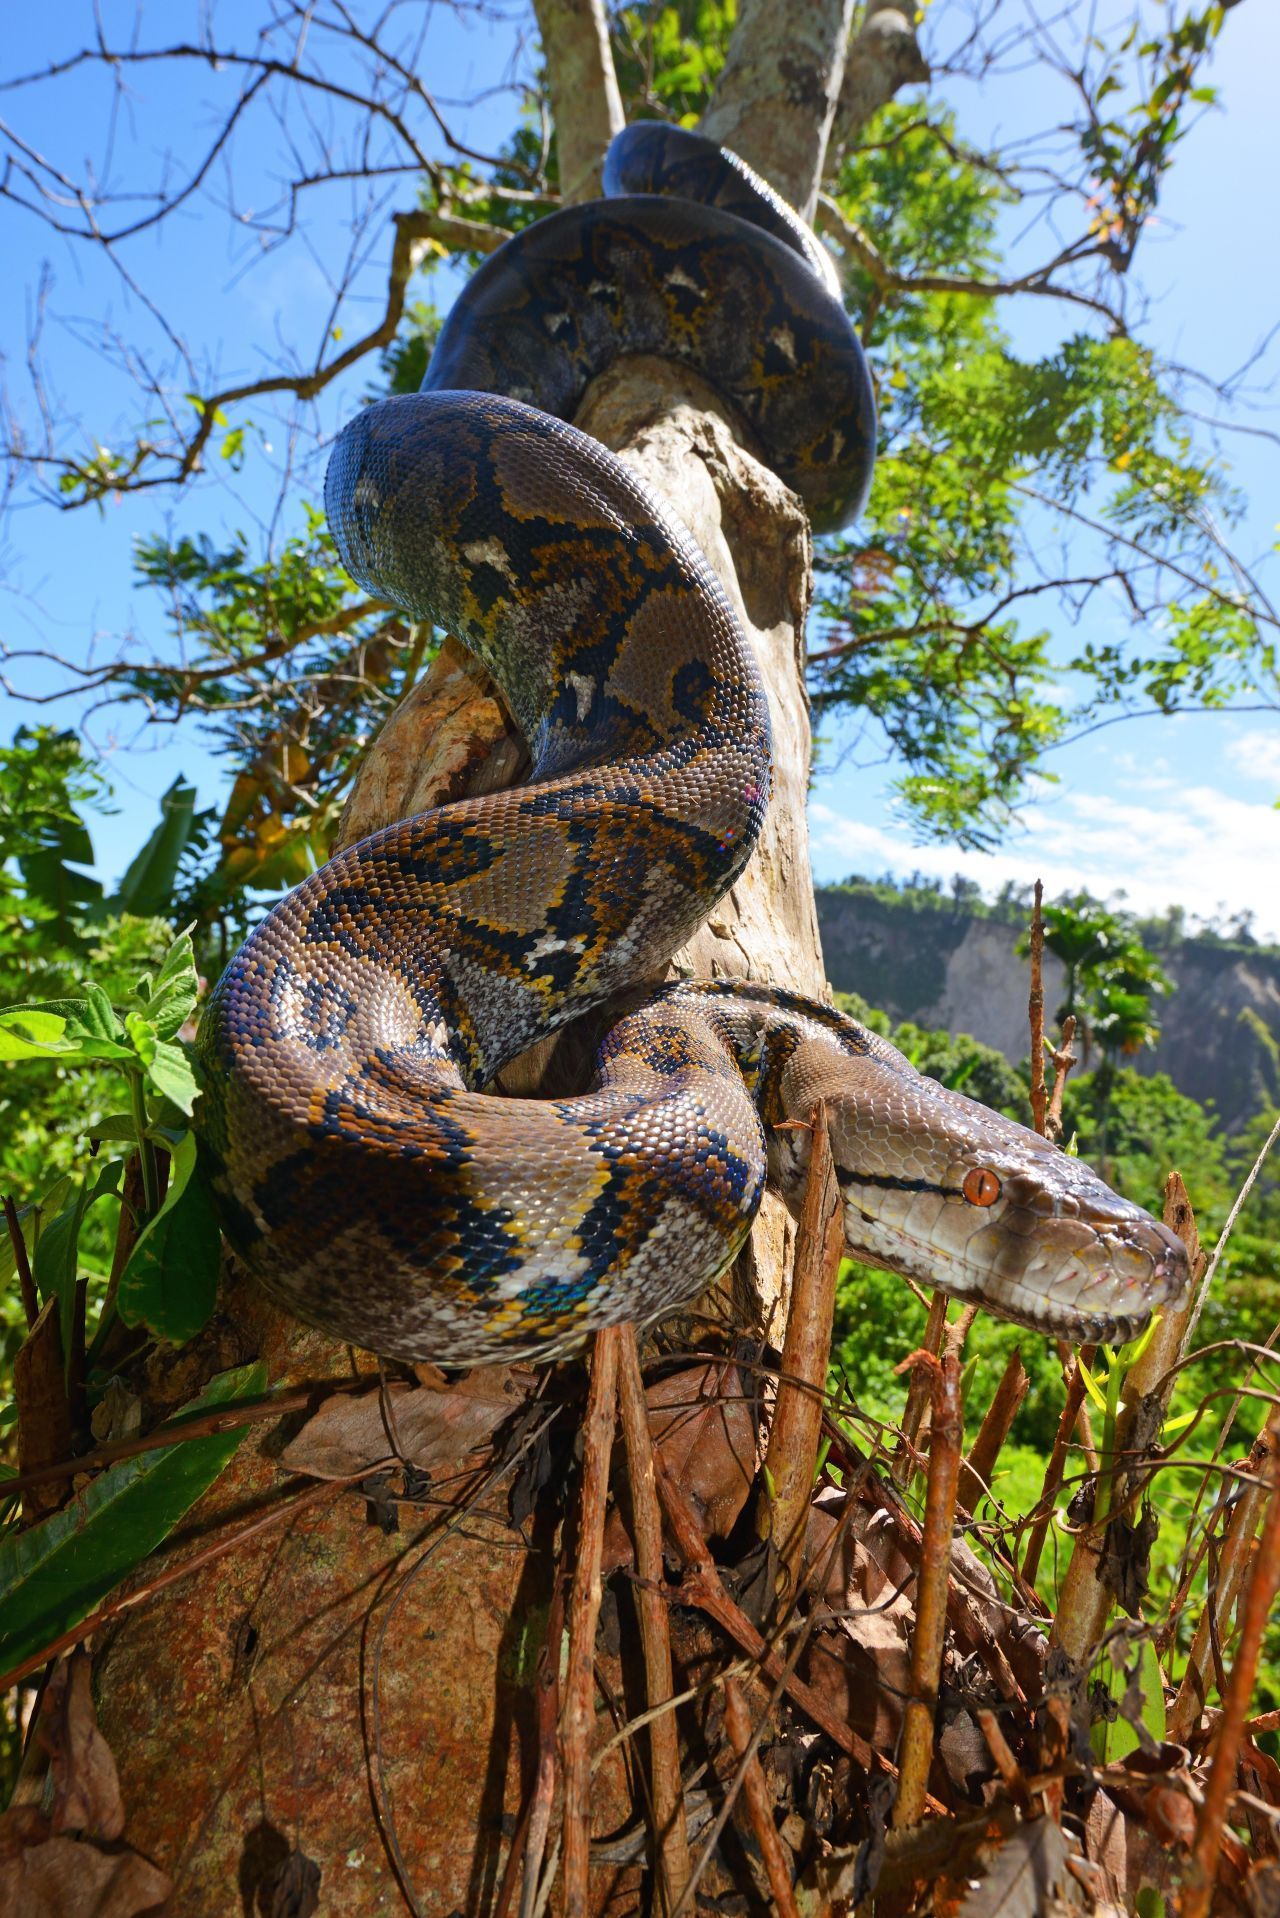 Der Netzpython lebt in den Regenwäldern Asiens. Es wurden schon Exemplare mit Längen von sieben Metern gemessen. Große Tiere können über 100 Kilo wiegen.